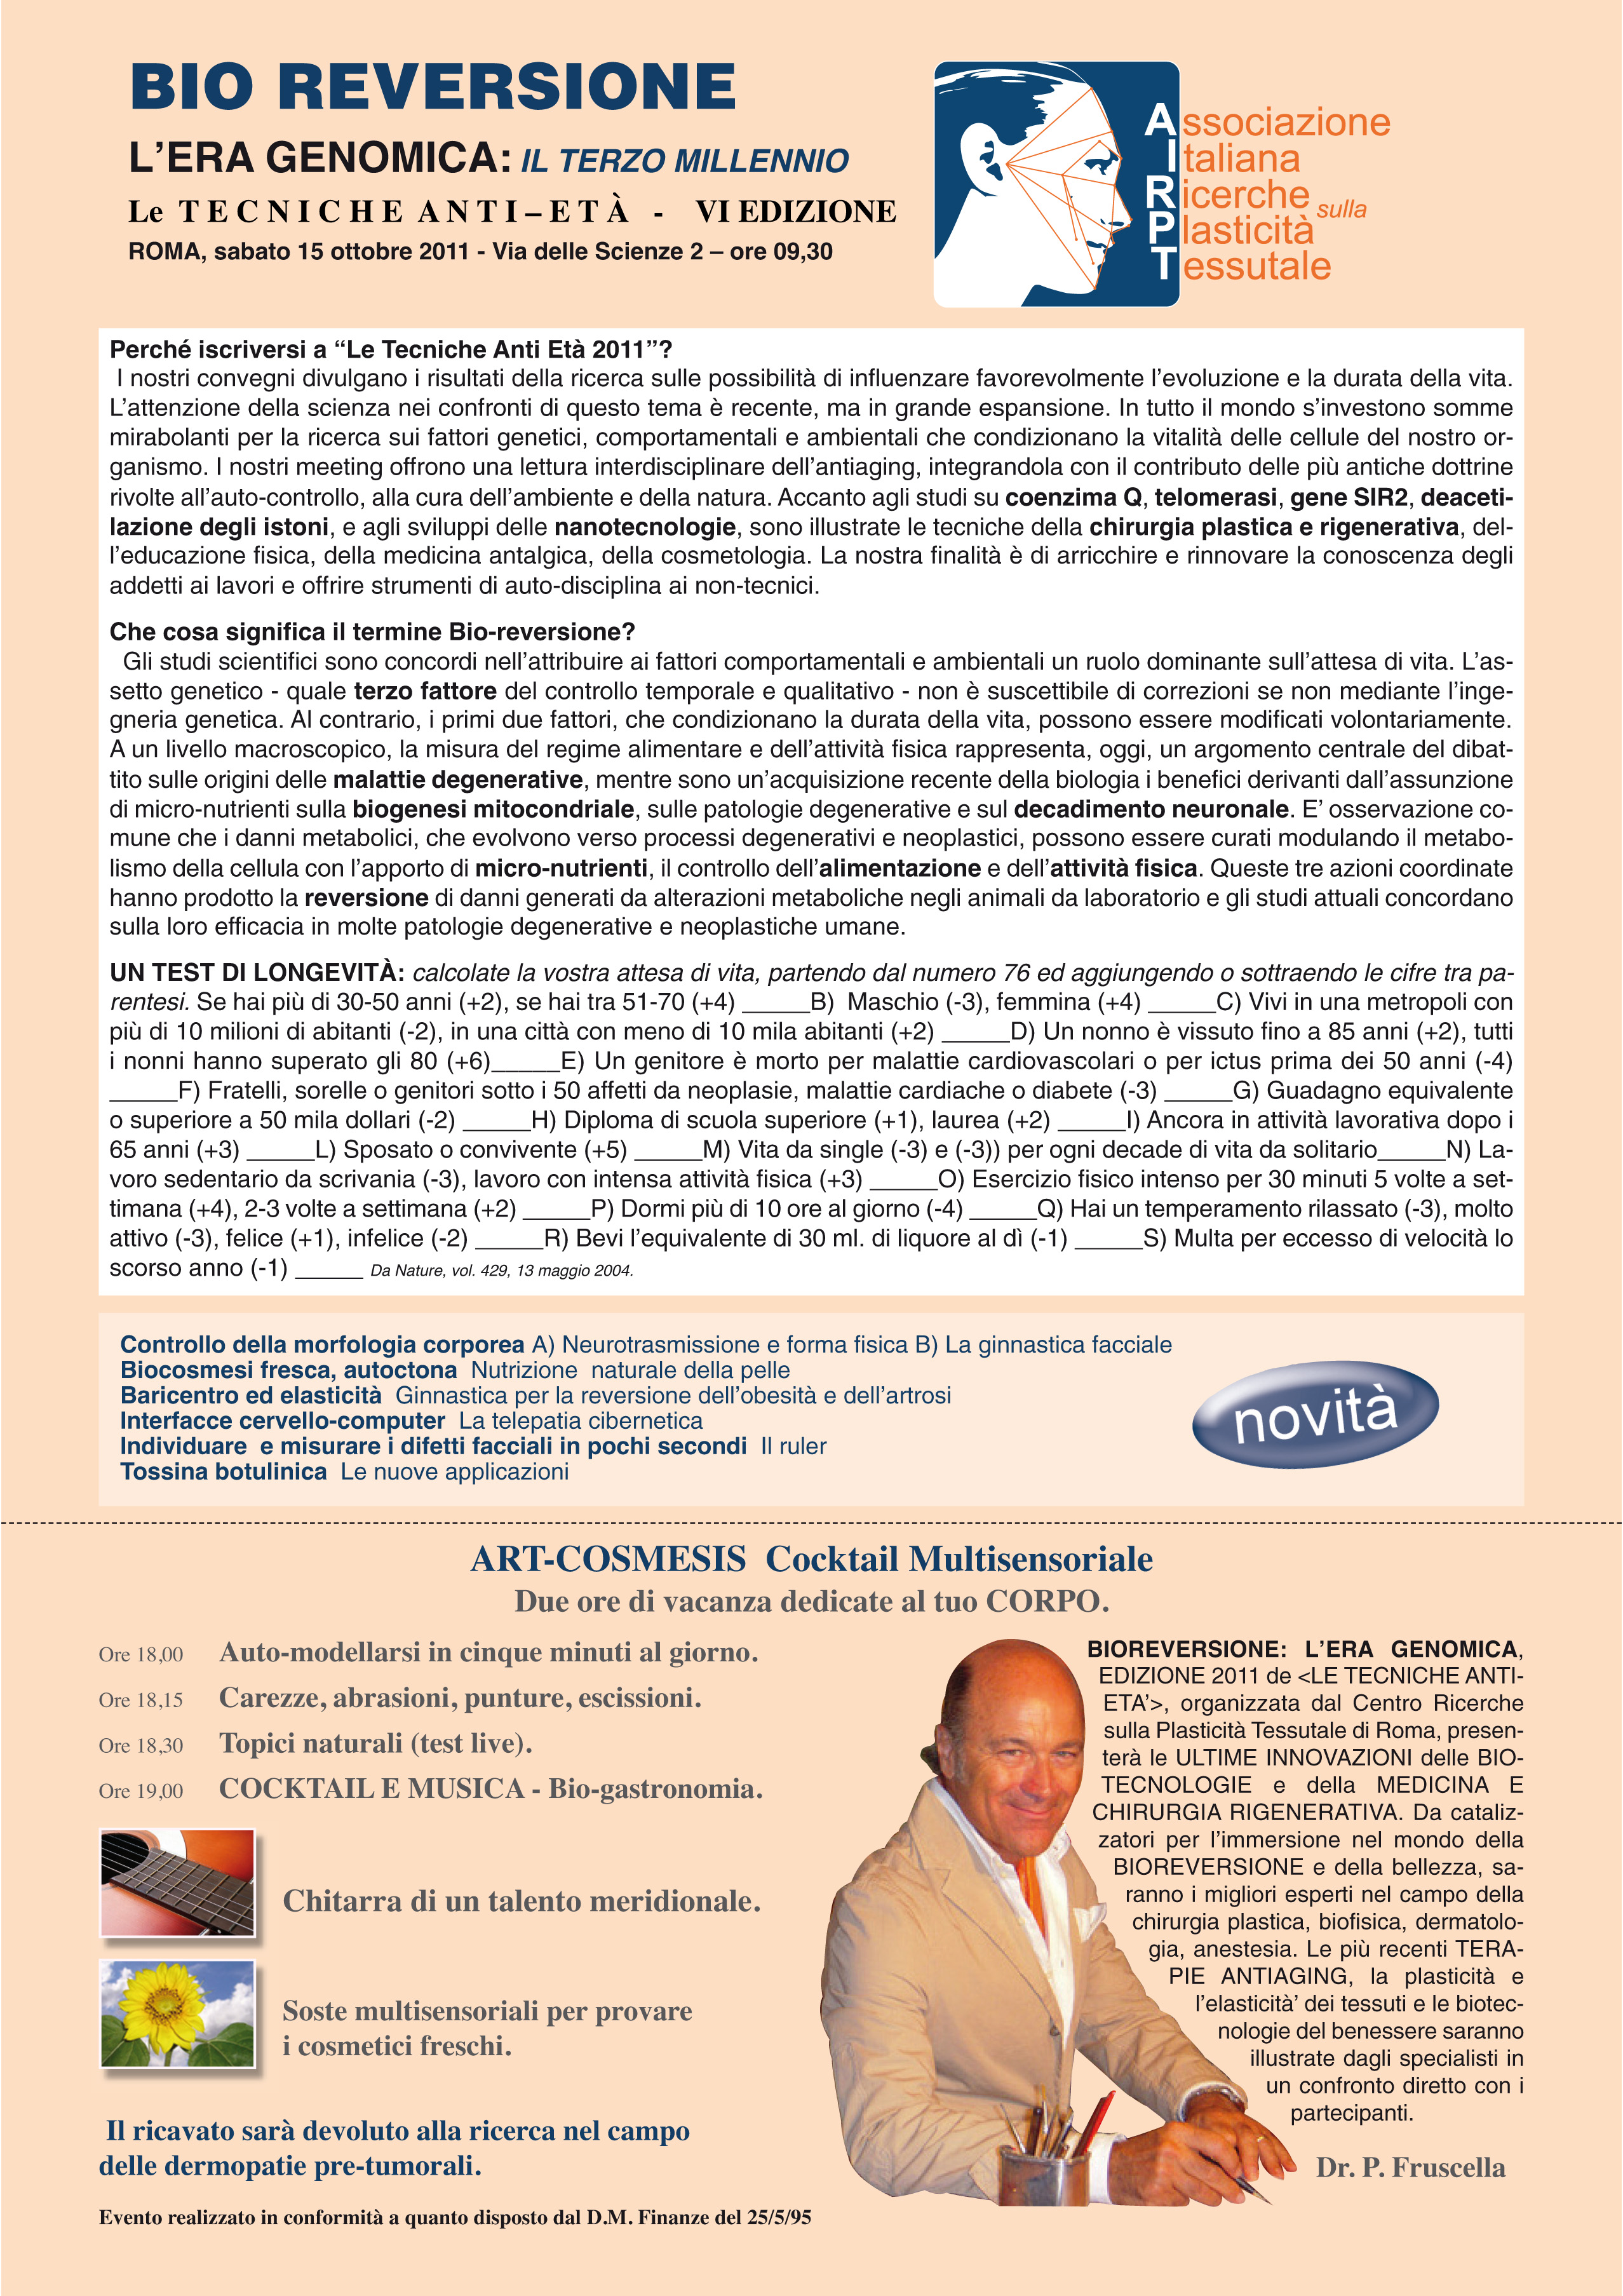 Pasquale Fruscella - Antiaging Anticancerogenesi Centro Ricerche sulla Plasticità Tessutale